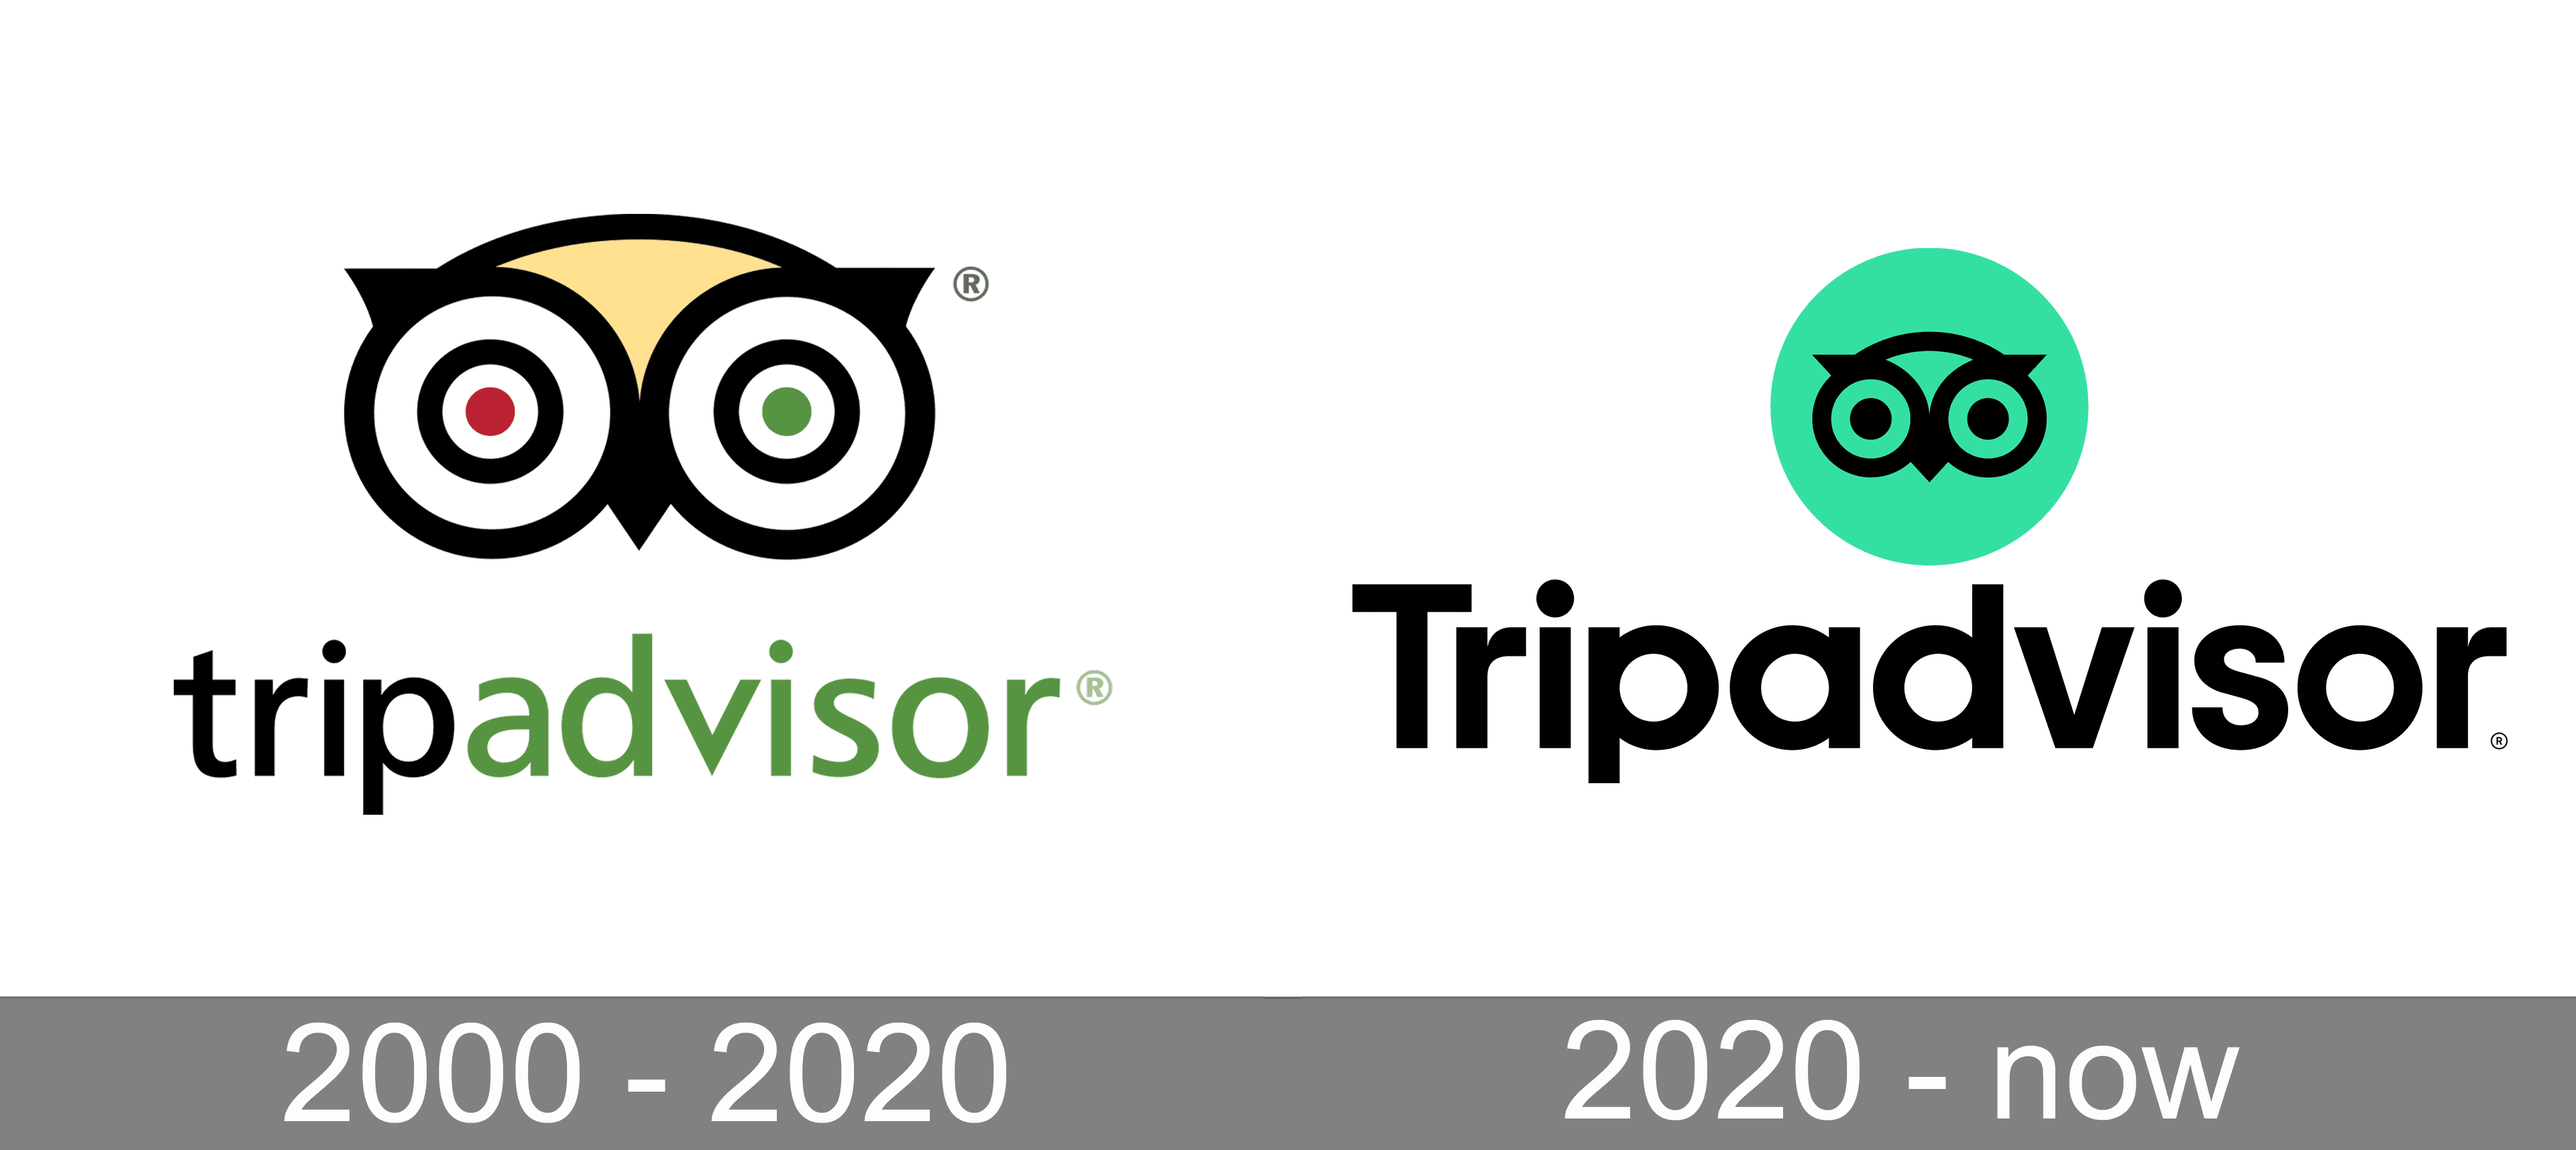 tripadvisor logo transparent